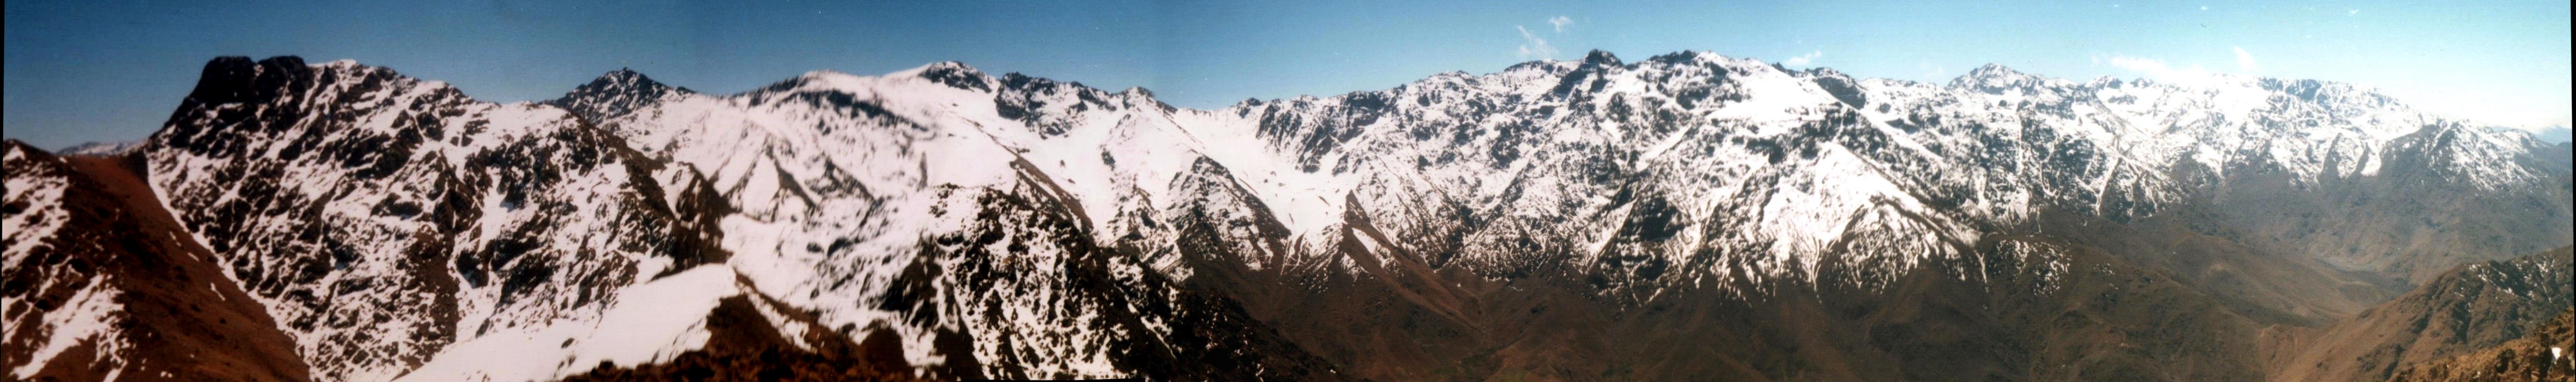 Djebel Angour from Djebel Okaimeden in the High Atlas